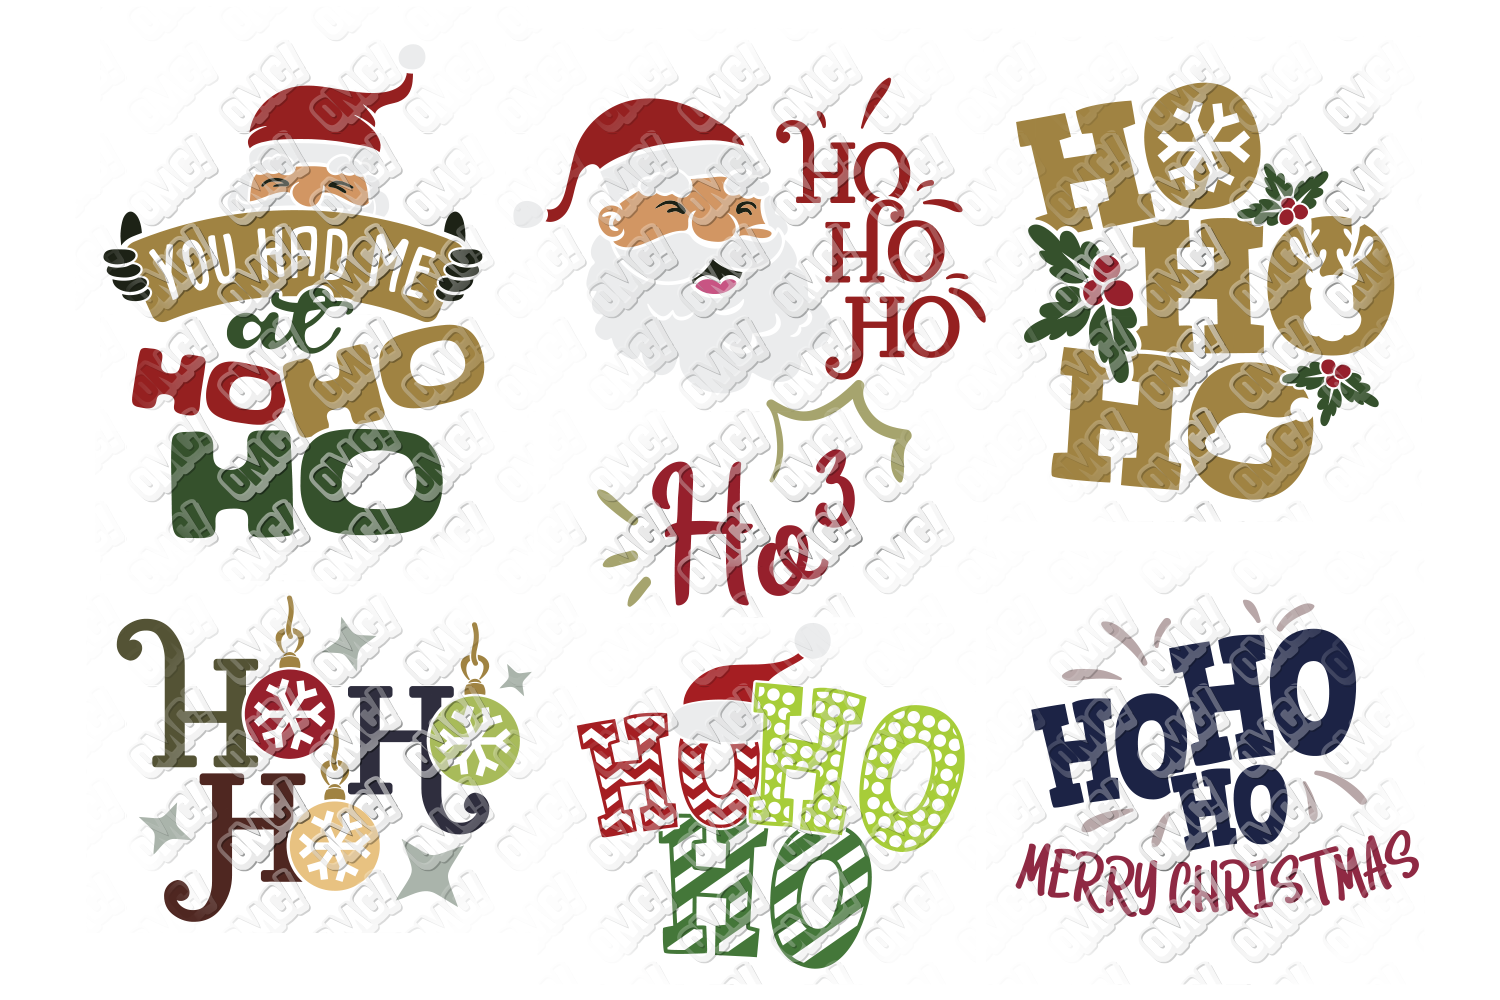 Download Ho Ho Ho SVG Christmas Santa in SVG, DXF, PNG, EPS, JPG